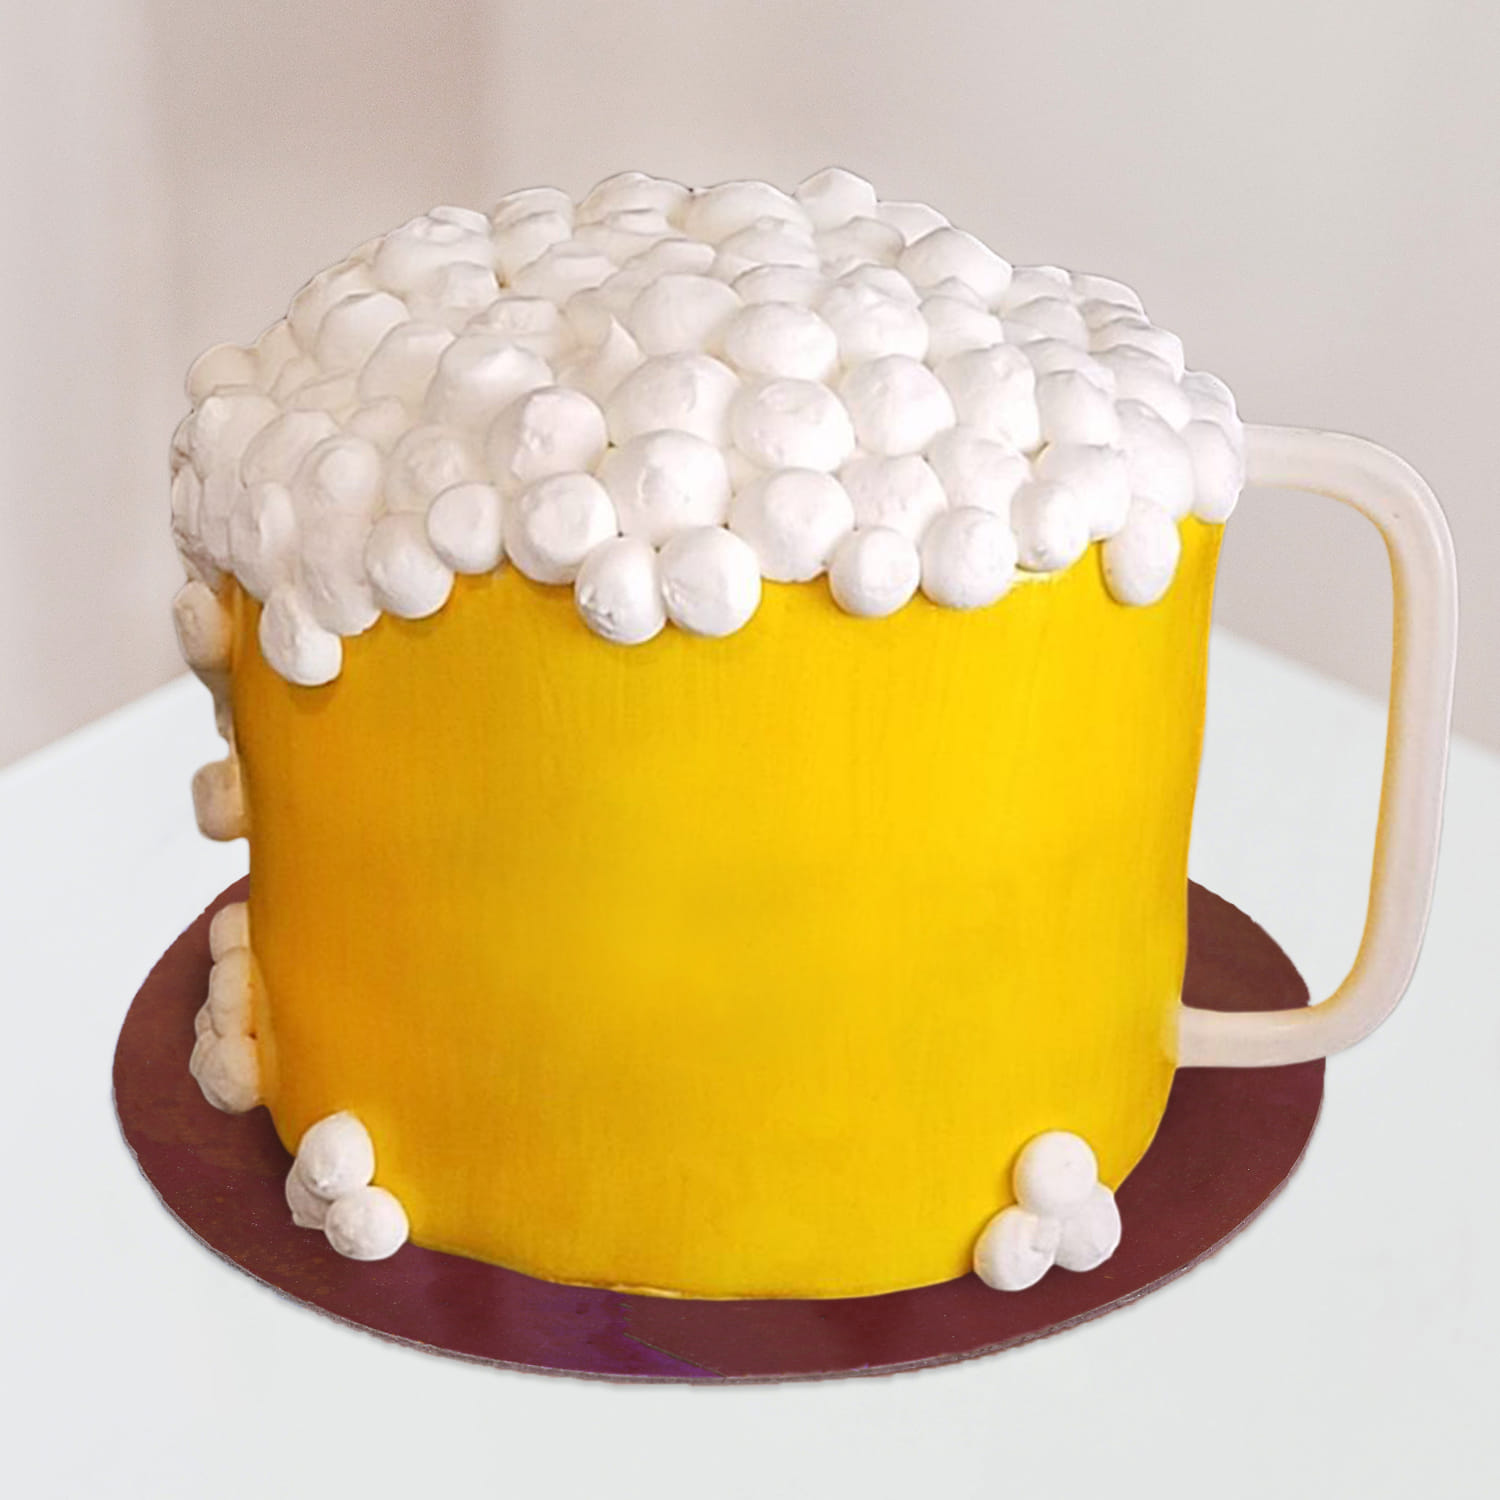 Sculpted Cakes | Birthday beer cake, Birthday cake beer, Beer mug cake